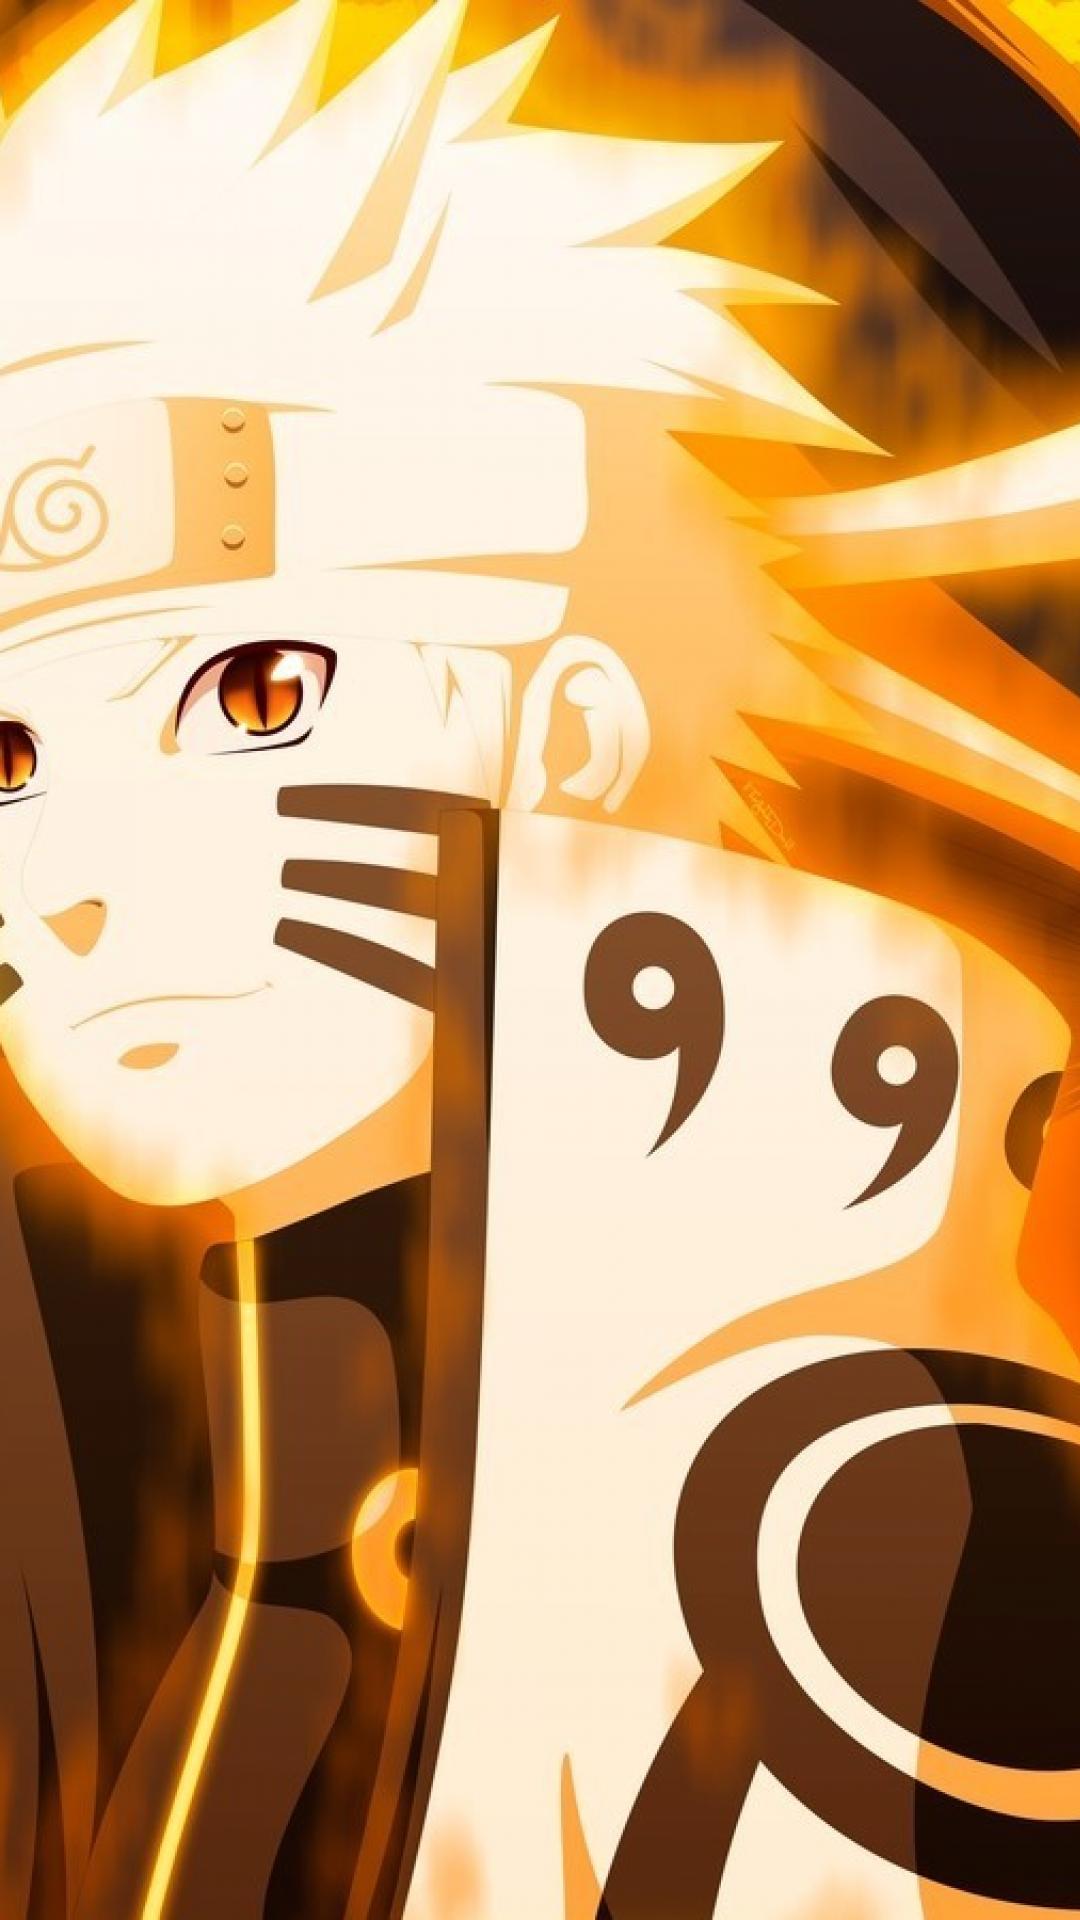 Naruto Sage Kyuubi Mode Wallpapers